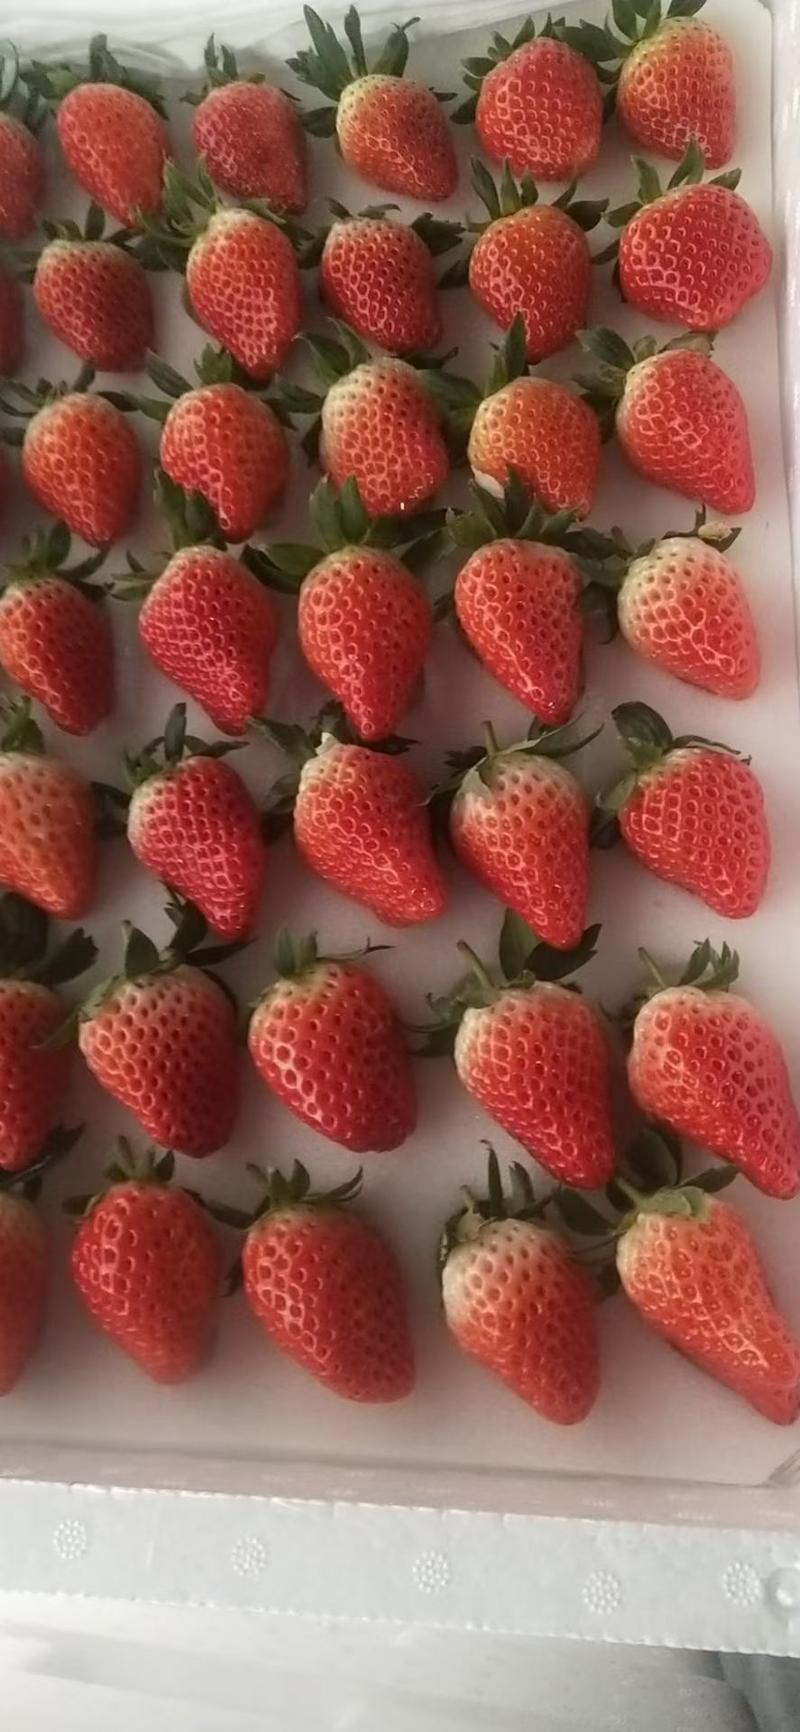 江苏甜宝草莓专业代收